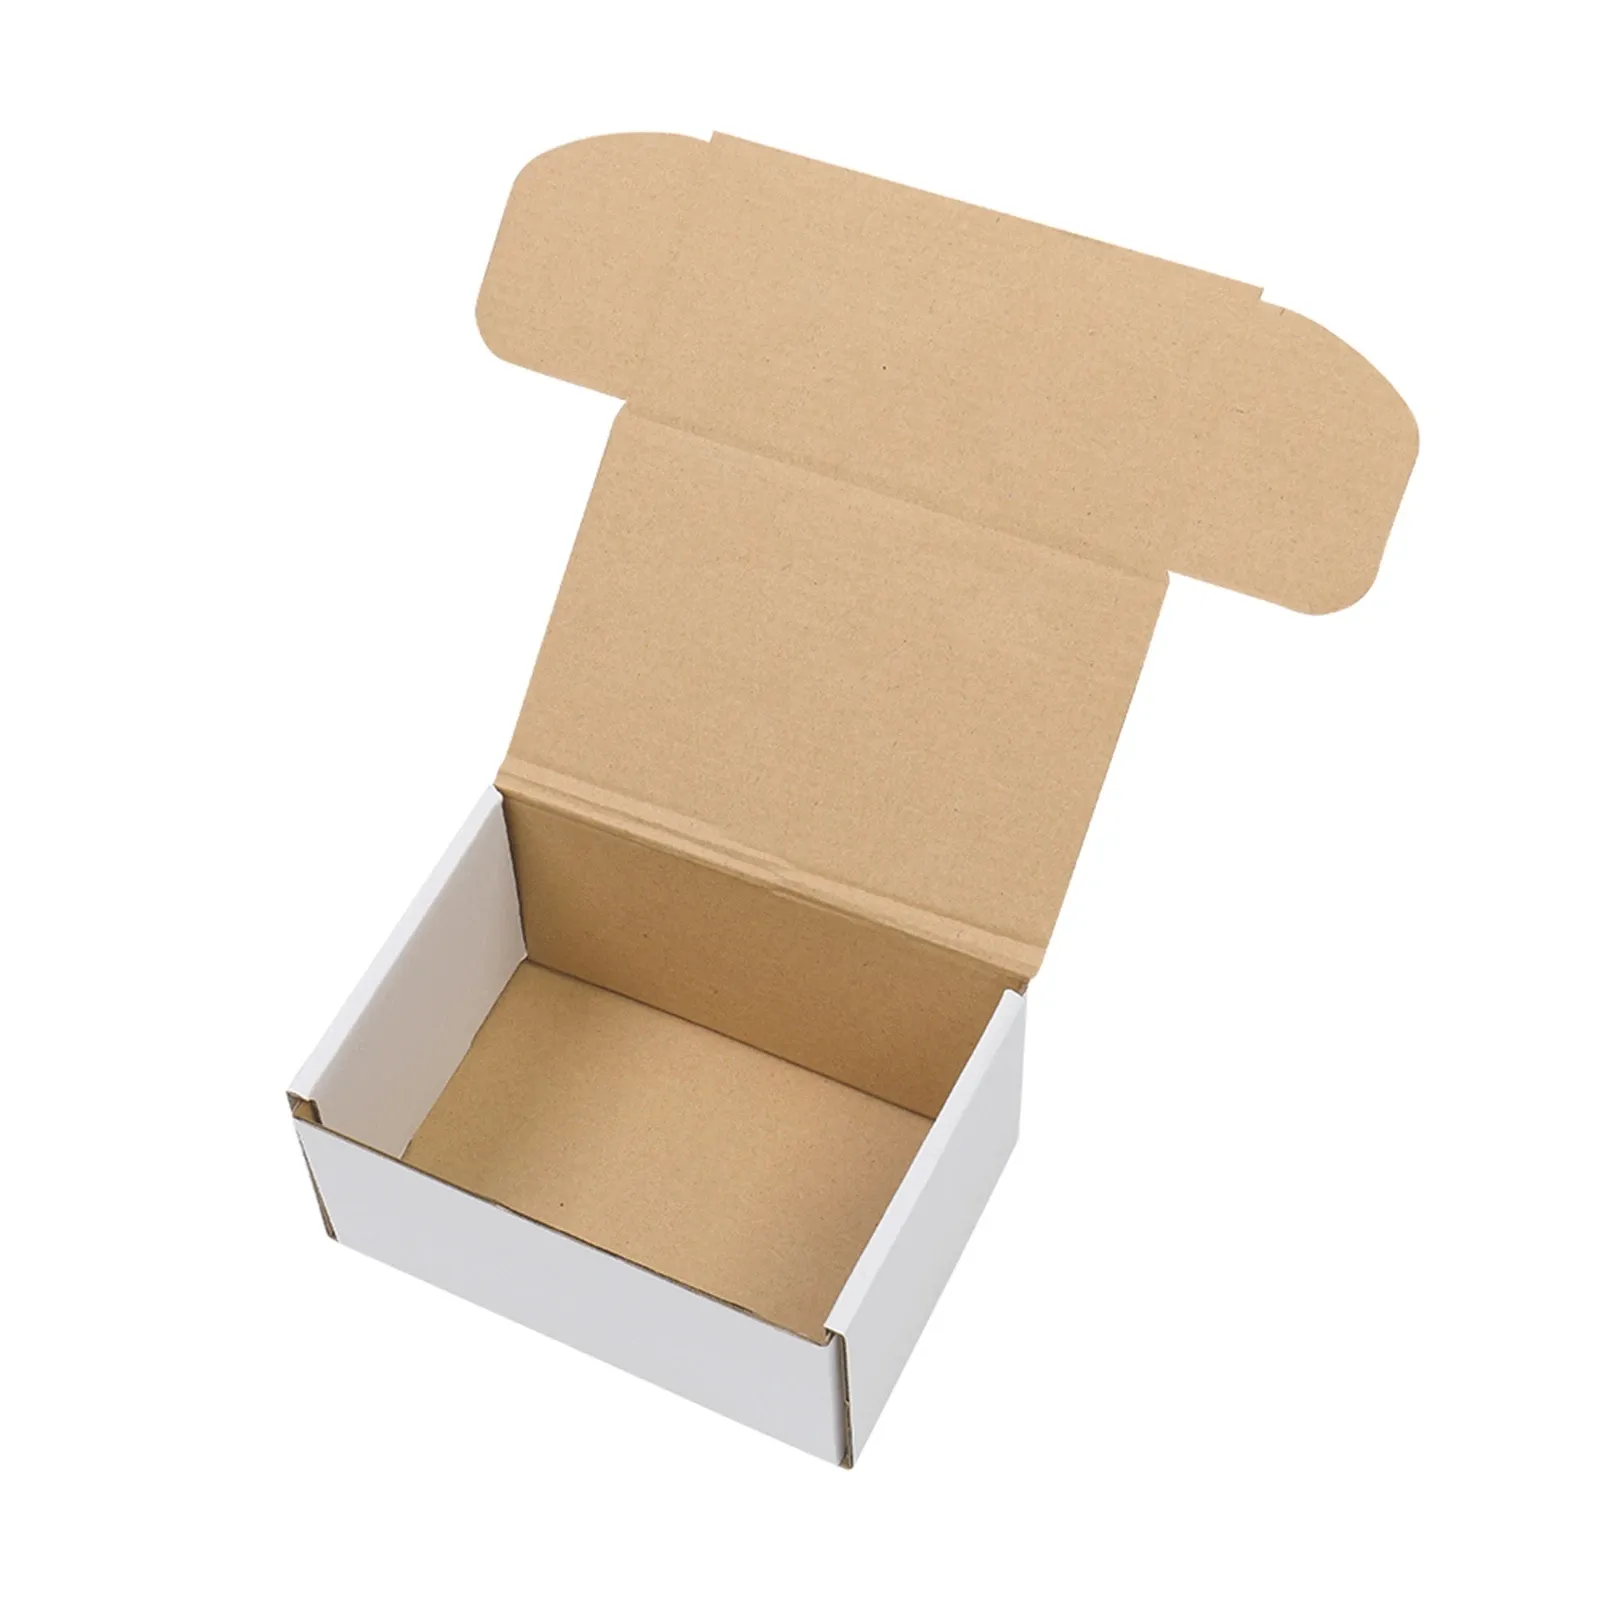 Caixa de papelão para embalagem de cosméticos cor cor-de-rosa com logotipo personalizado de fábrica OEM, caixa de papelão para envio postal com qualidade garantida